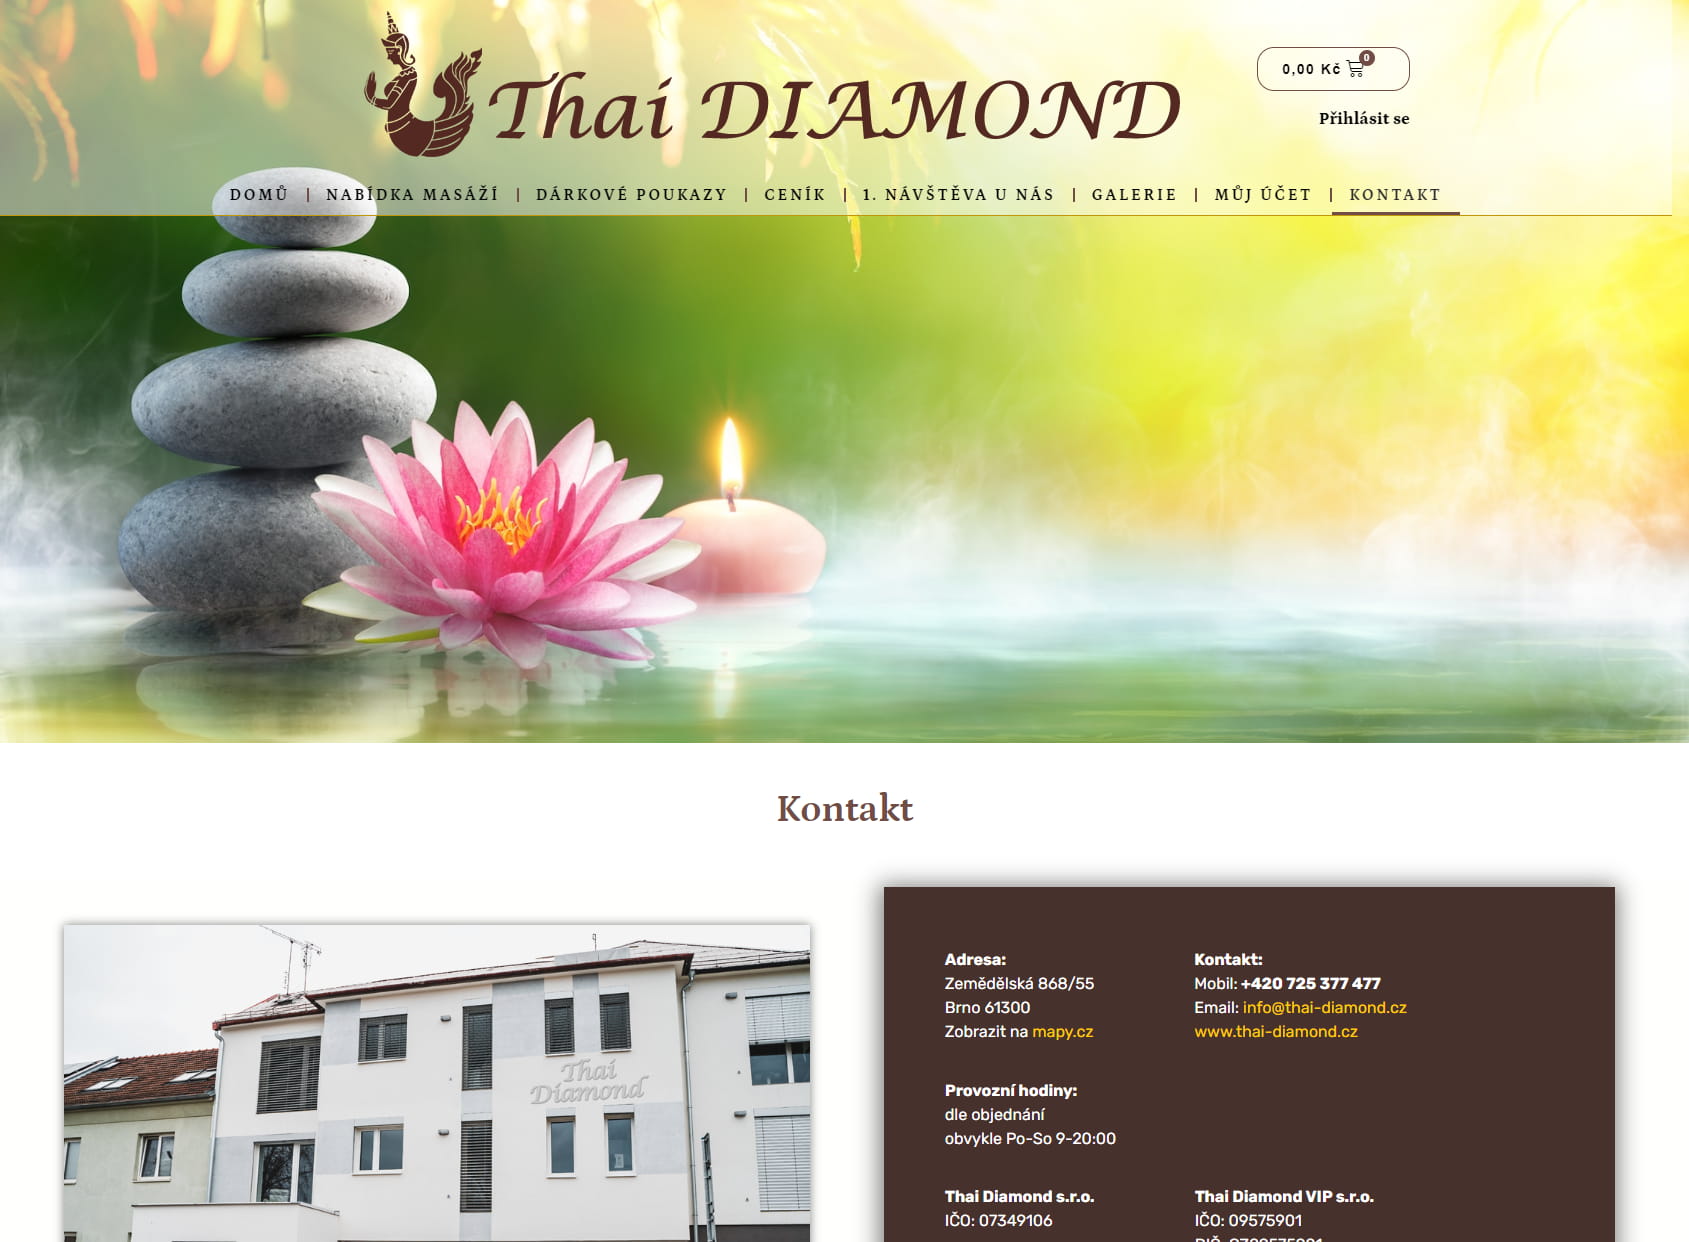 Thai DIAMOND